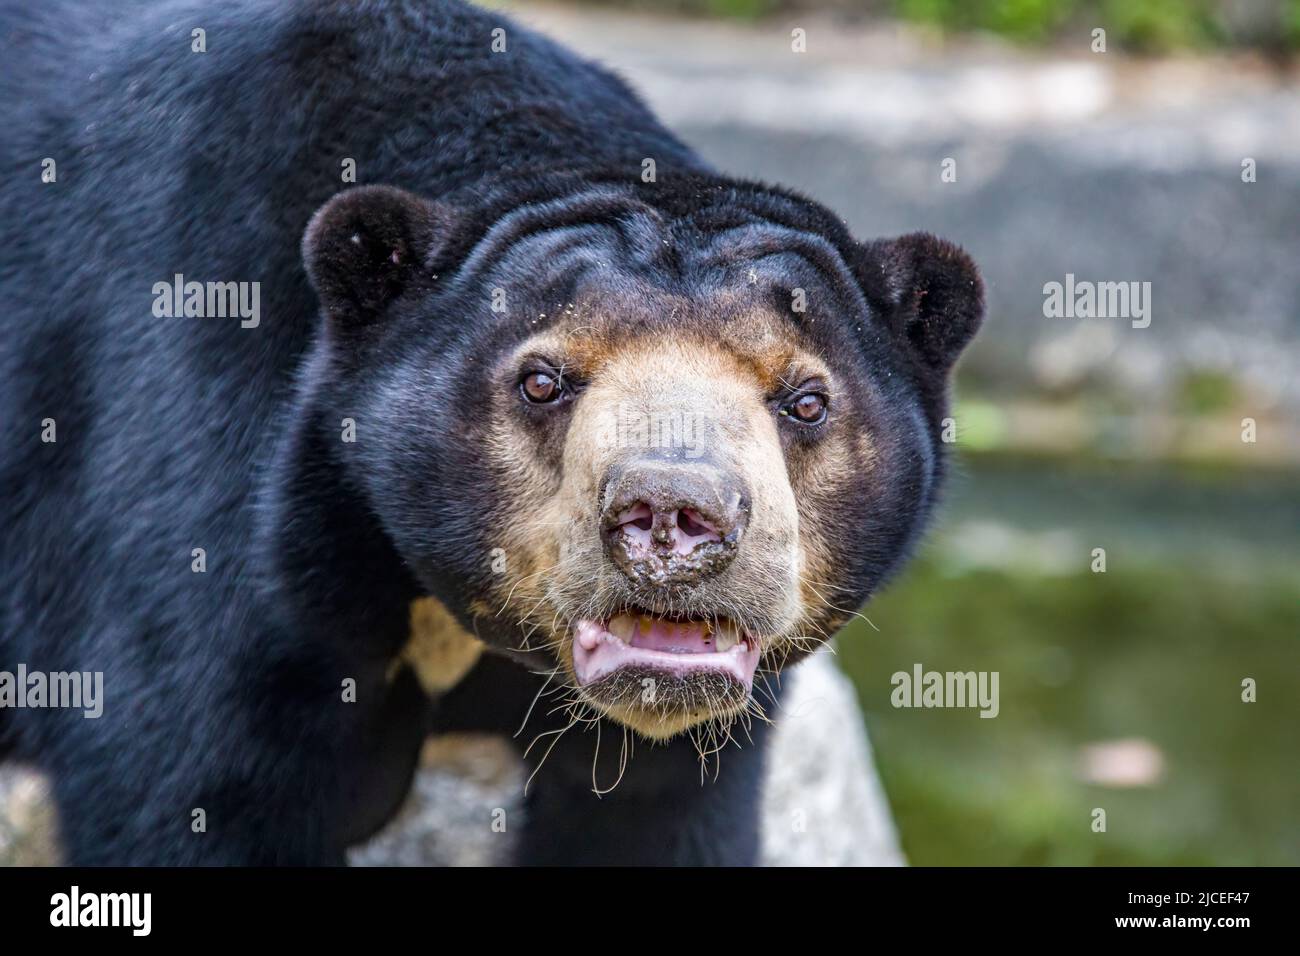 l'orso del sole è una specie che si trova negli habitat della foresta tropicale del sud-est asiatico. La sua pelliccia è di solito jet-black, corto. Foto Stock